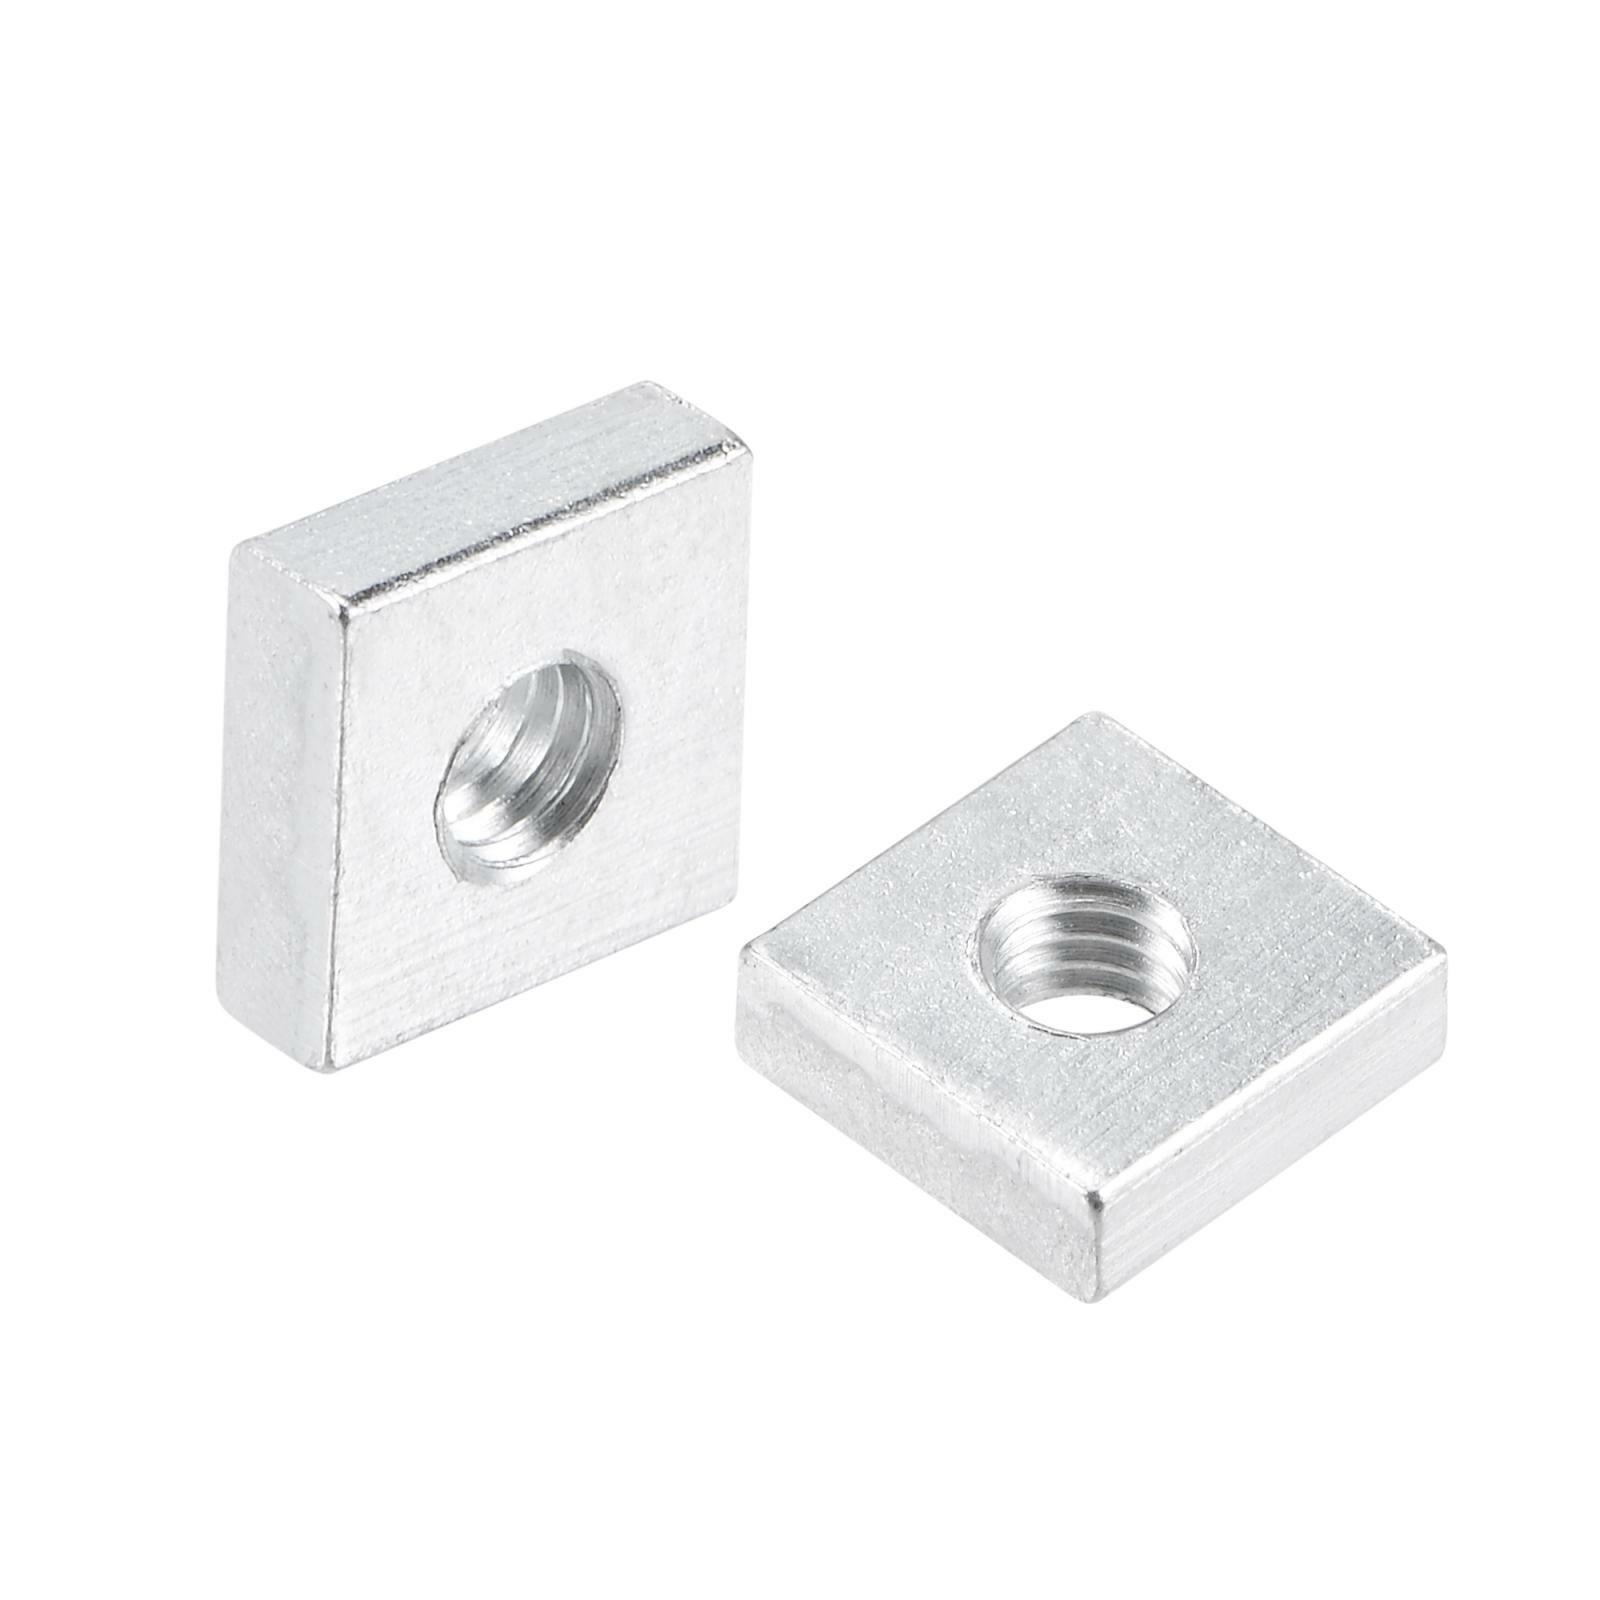 Square Nuts M4x9mmx3mm Zinc-plated Metric Coarse Thread Assortment Kit 25pcs